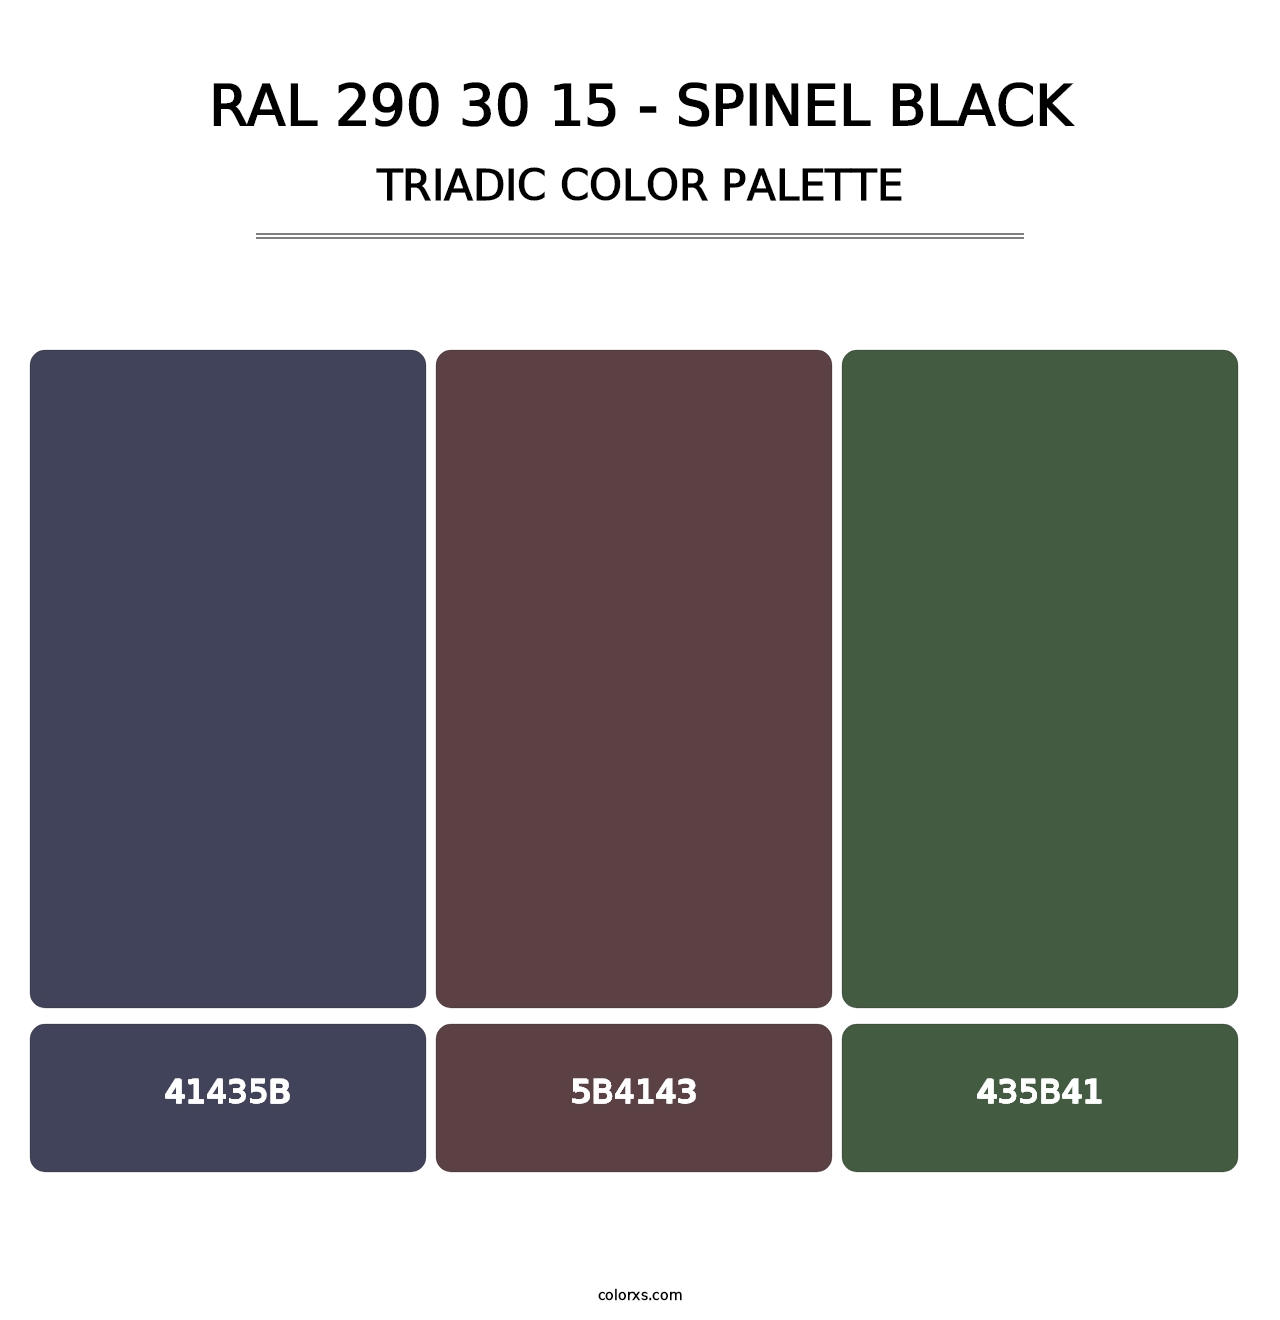 RAL 290 30 15 - Spinel Black - Triadic Color Palette